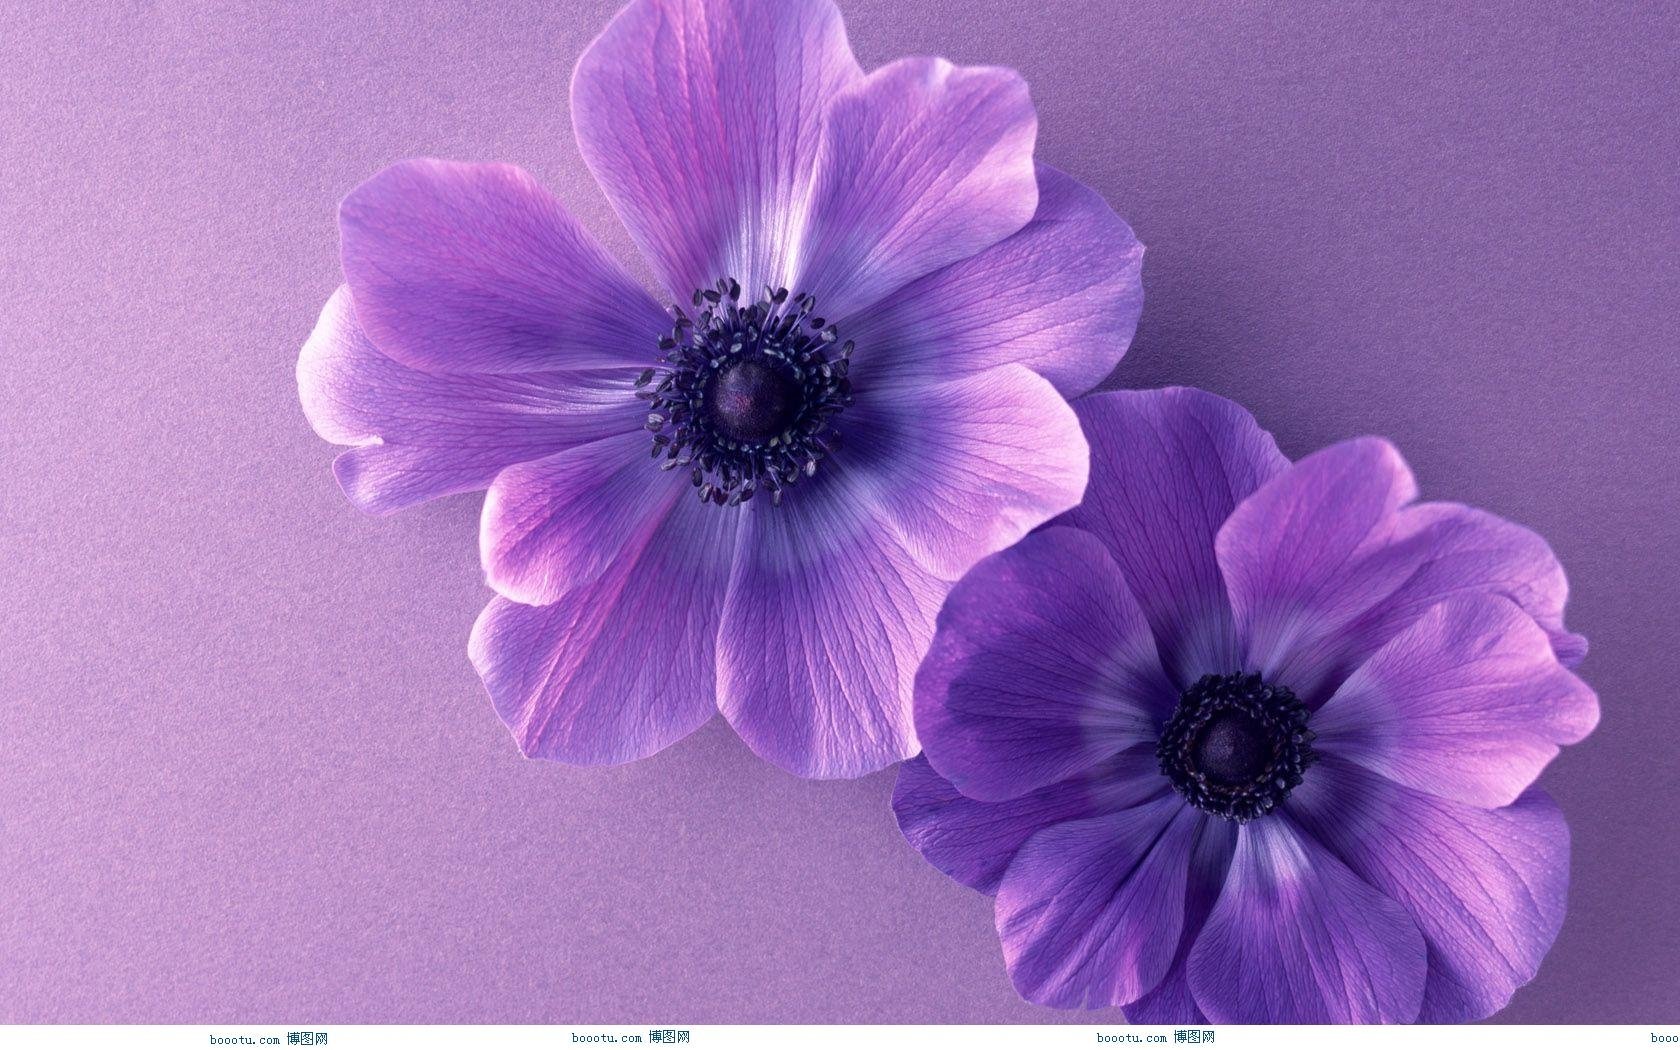 hd wallpapers purple flower wallpaper border desktop flowers 1680x1050